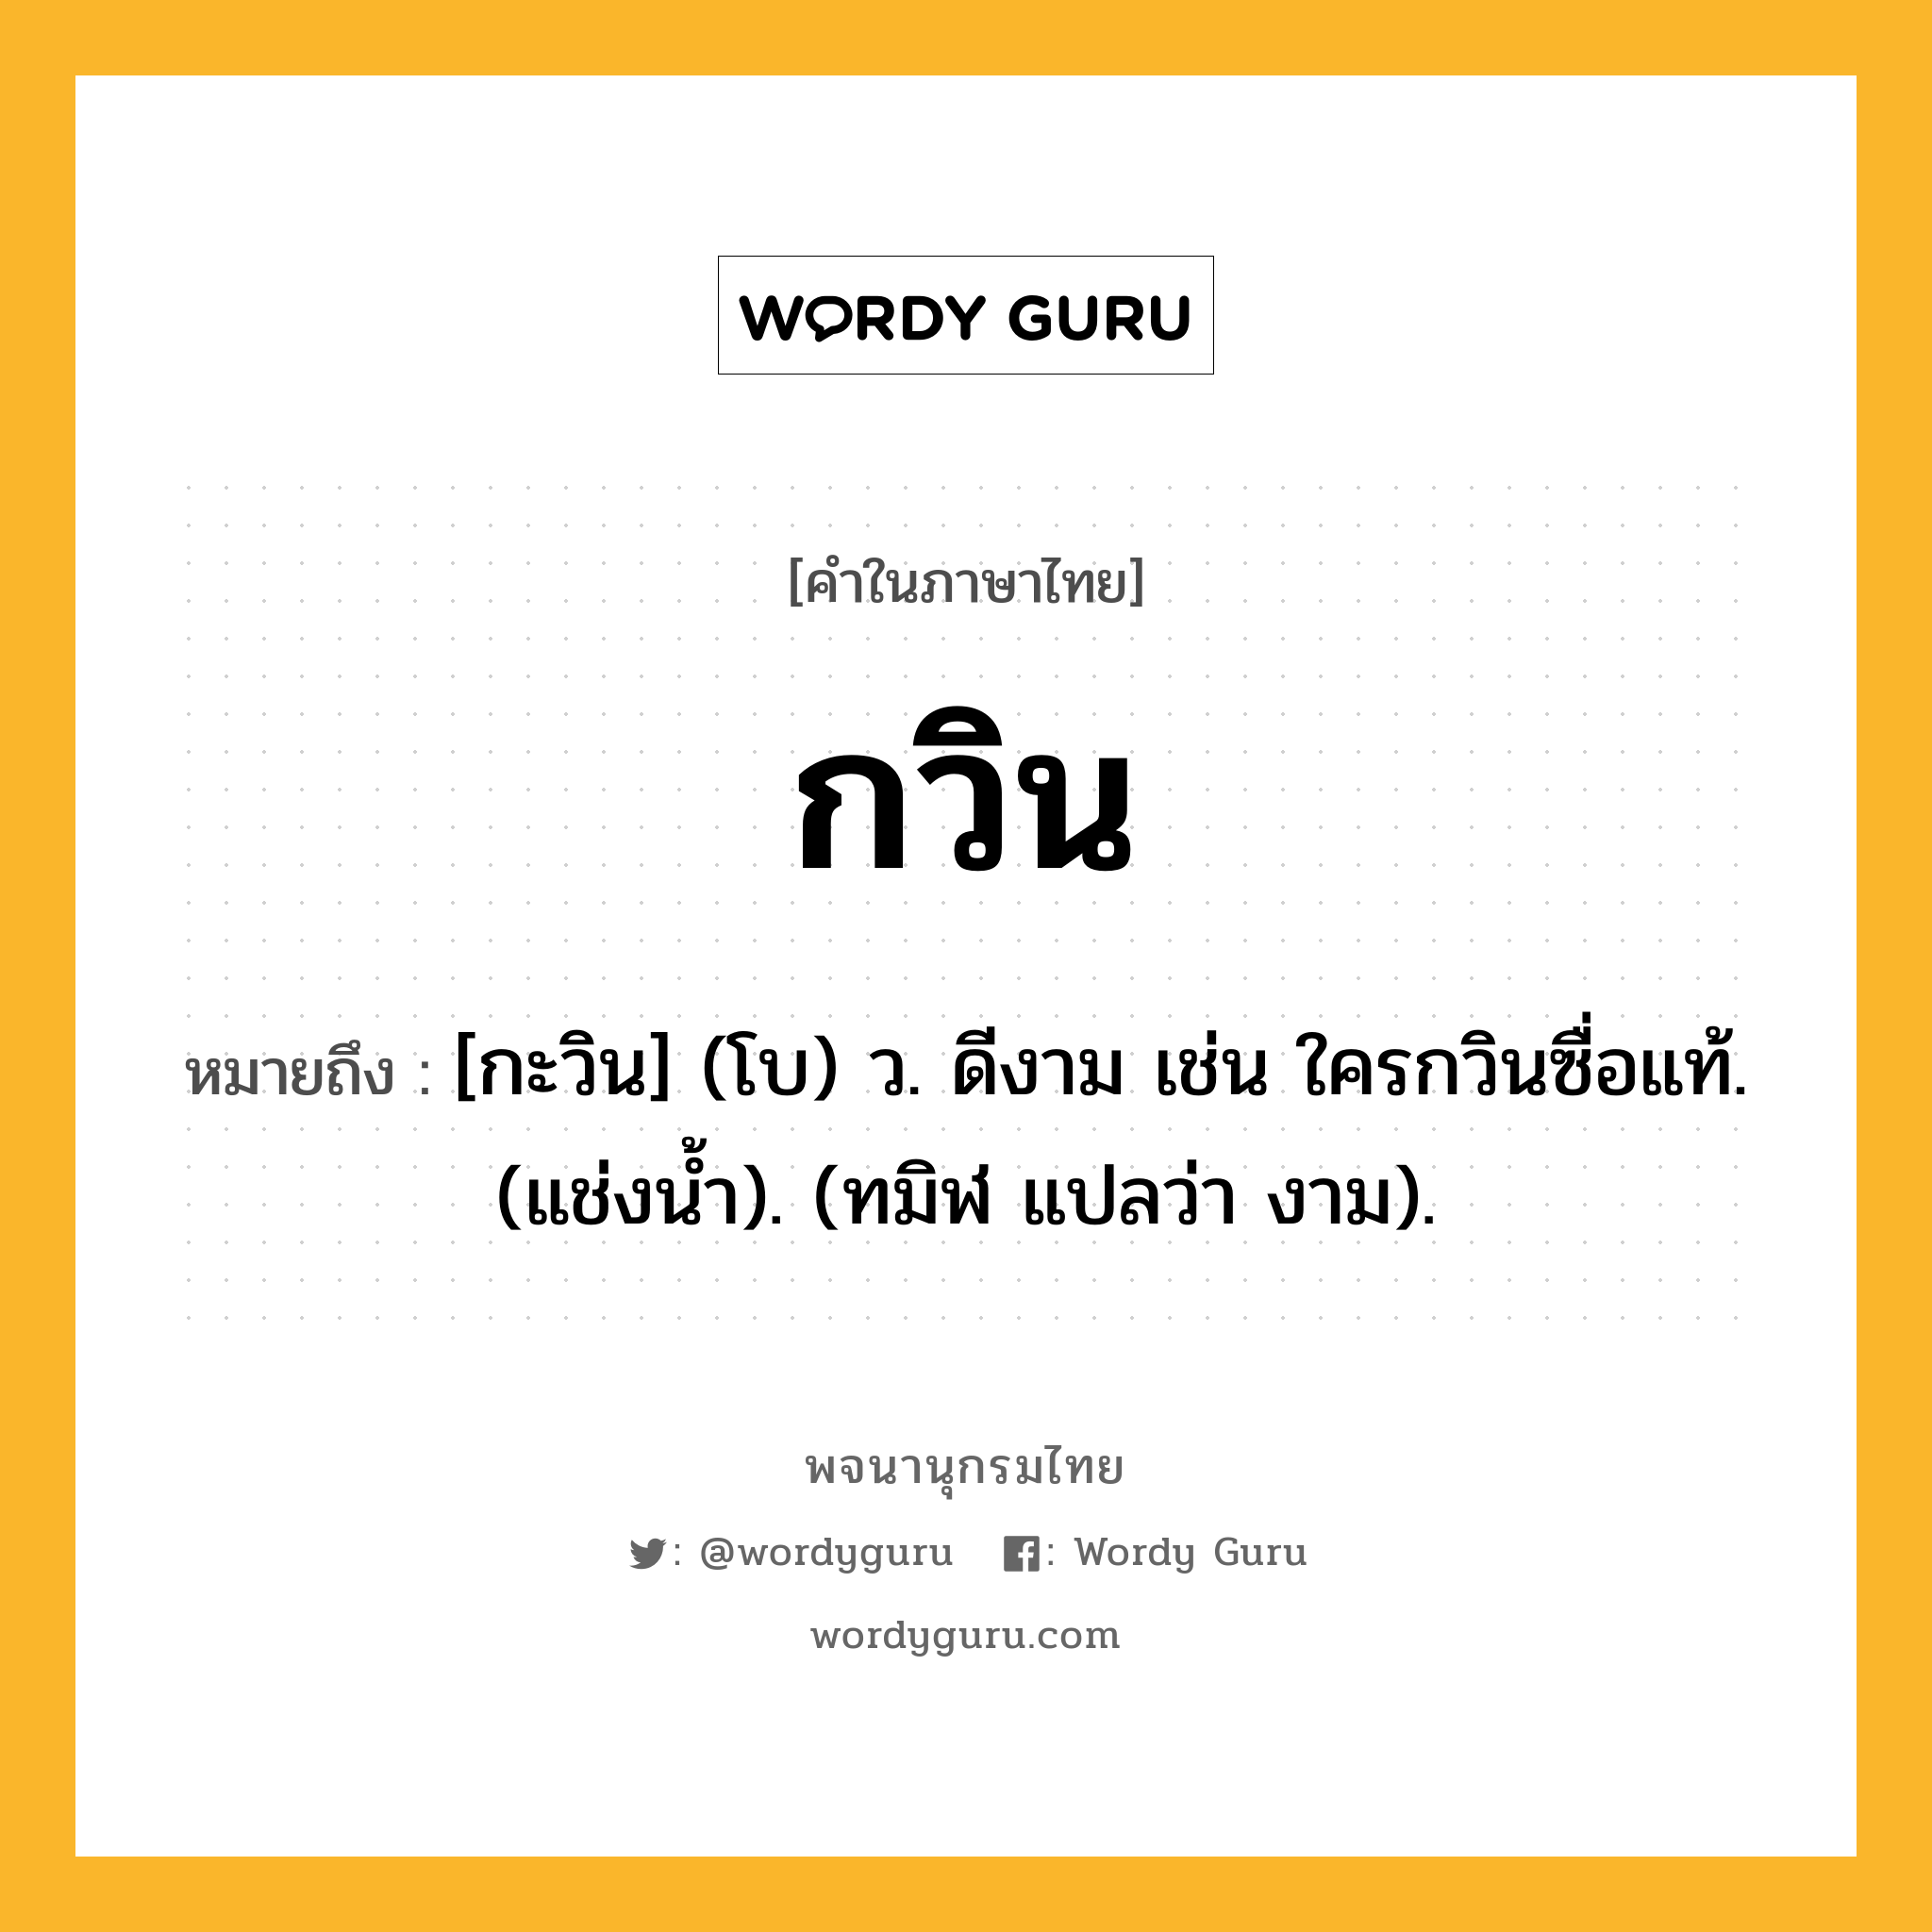 กวิน หมายถึงอะไร?, คำในภาษาไทย กวิน หมายถึง [กะวิน] (โบ) ว. ดีงาม เช่น ใครกวินซื่อแท้. (แช่งนํ้า). (ทมิฬ แปลว่า งาม).